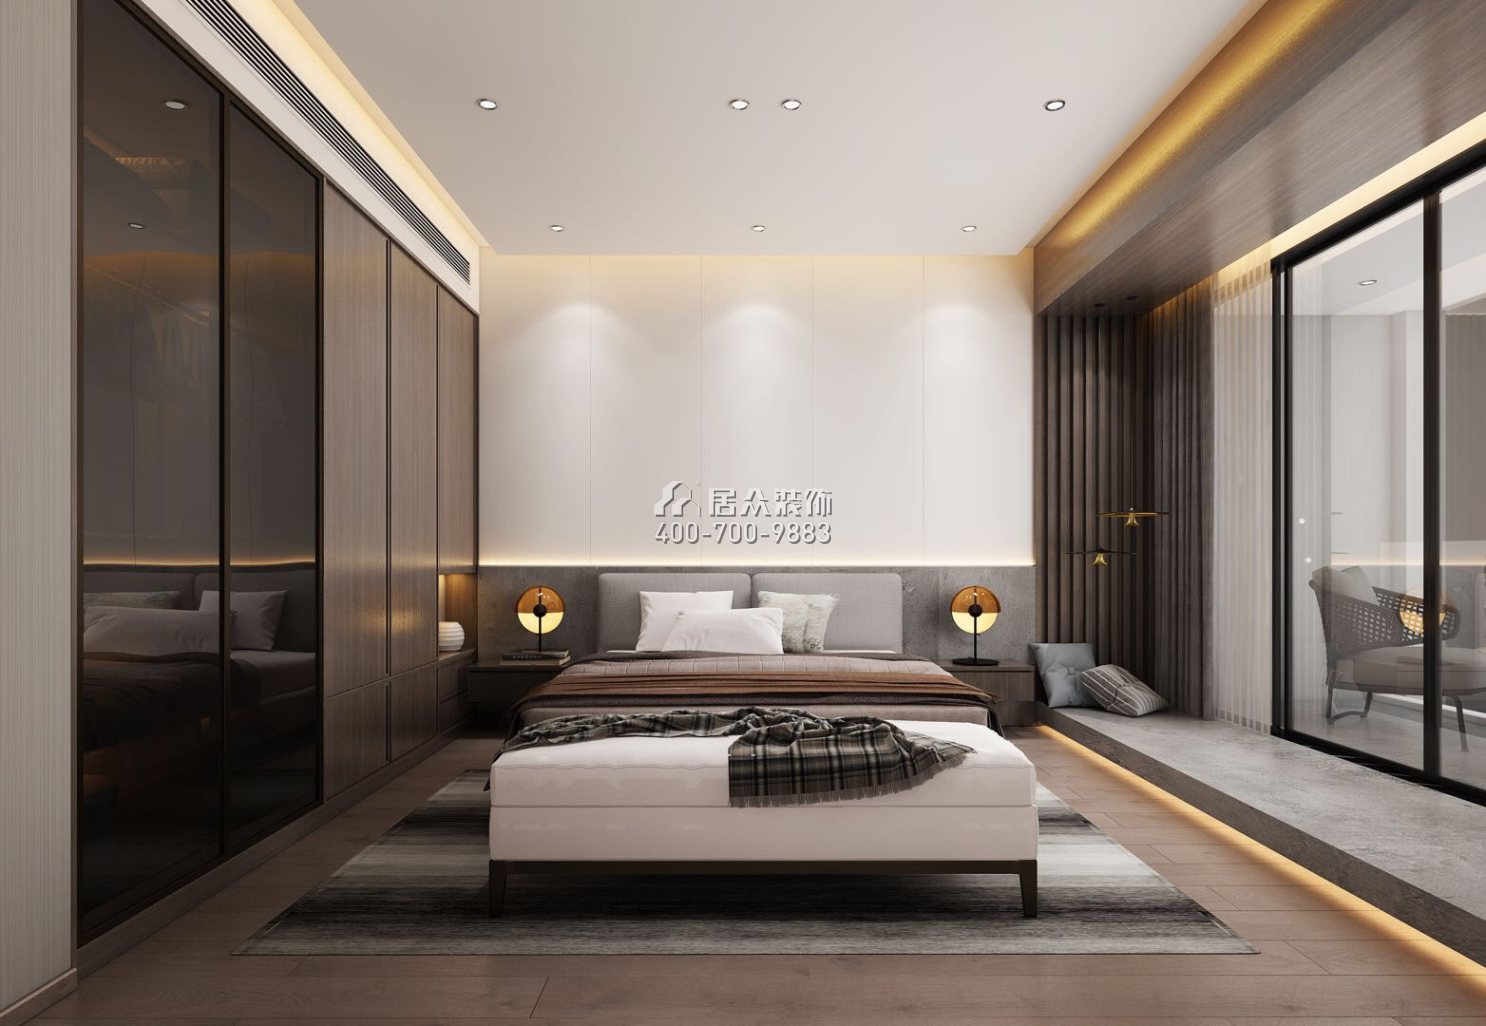 佳兆業城市廣場190平方米現代簡約風格復式戶型臥室裝修效果圖